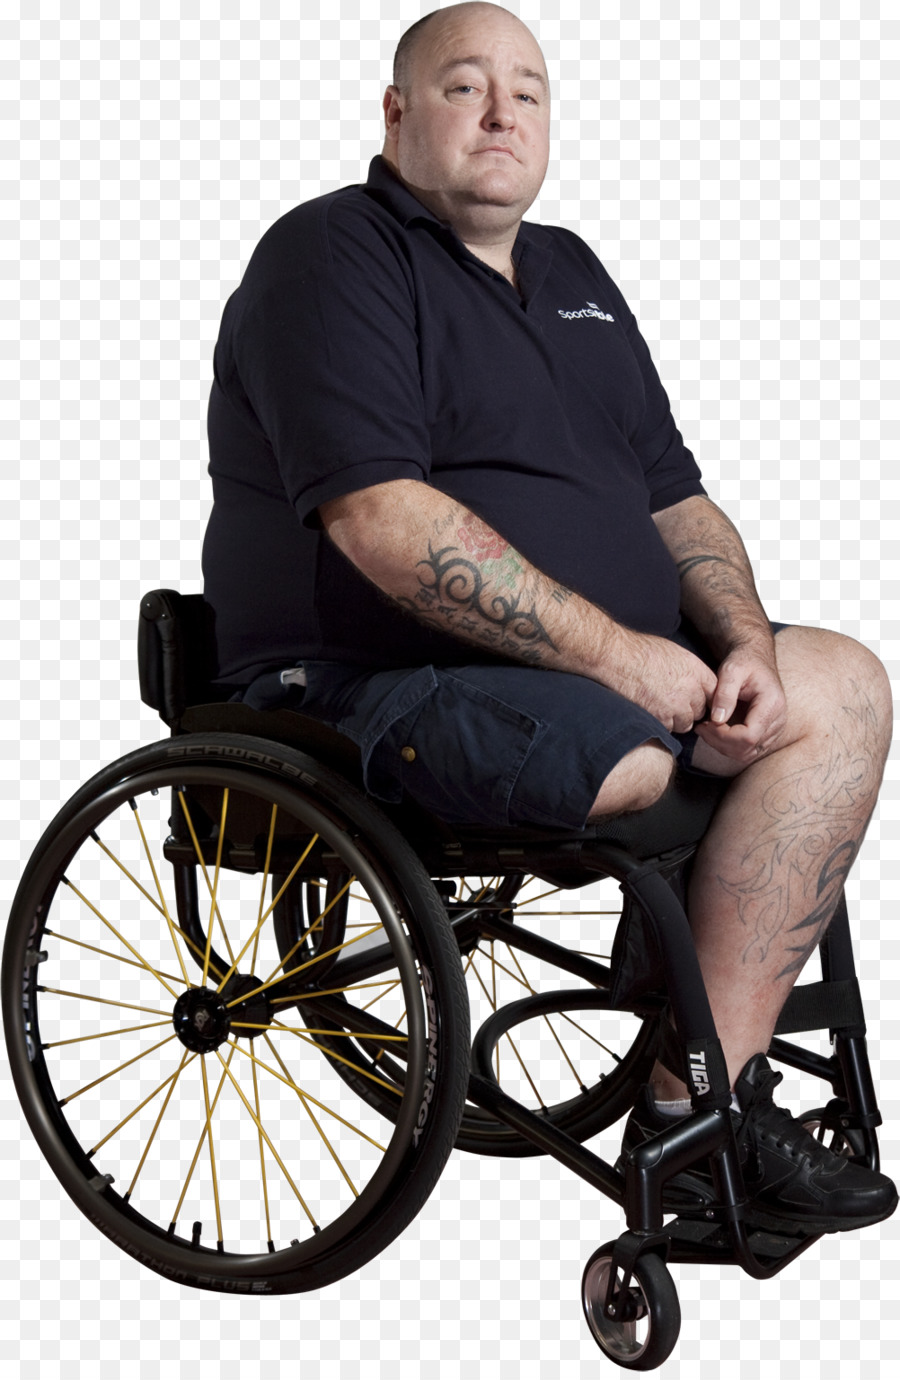 SportsAble SL6 di 1 miliardo di euro Braywick Strada sedia a Rotelle Disabilità - sedia a rotelle